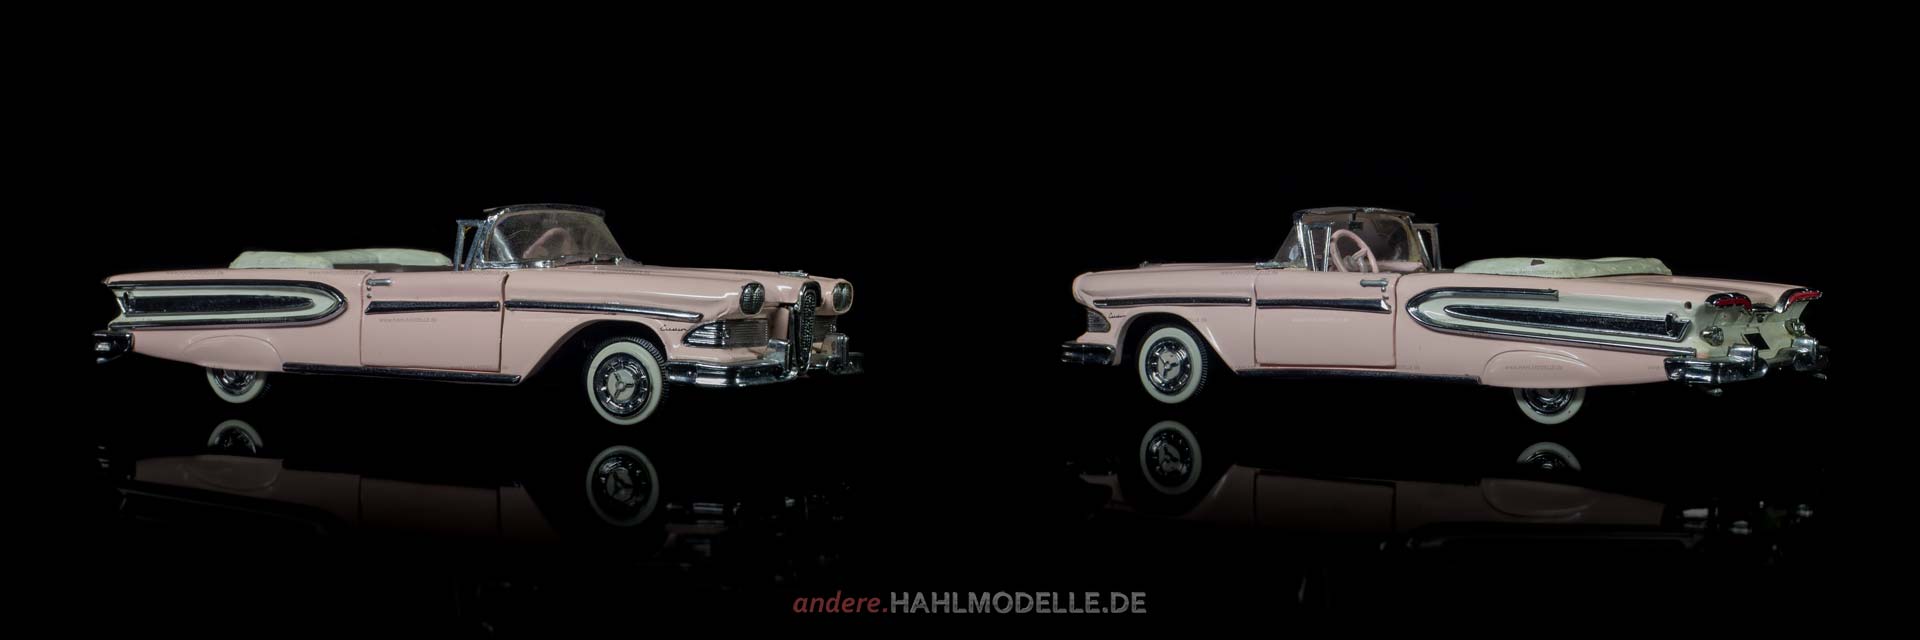 Edsel Citation | Cabriolet | Franklin Mint Precision Models | 1:43 | www.andere.hahlmodelle.de